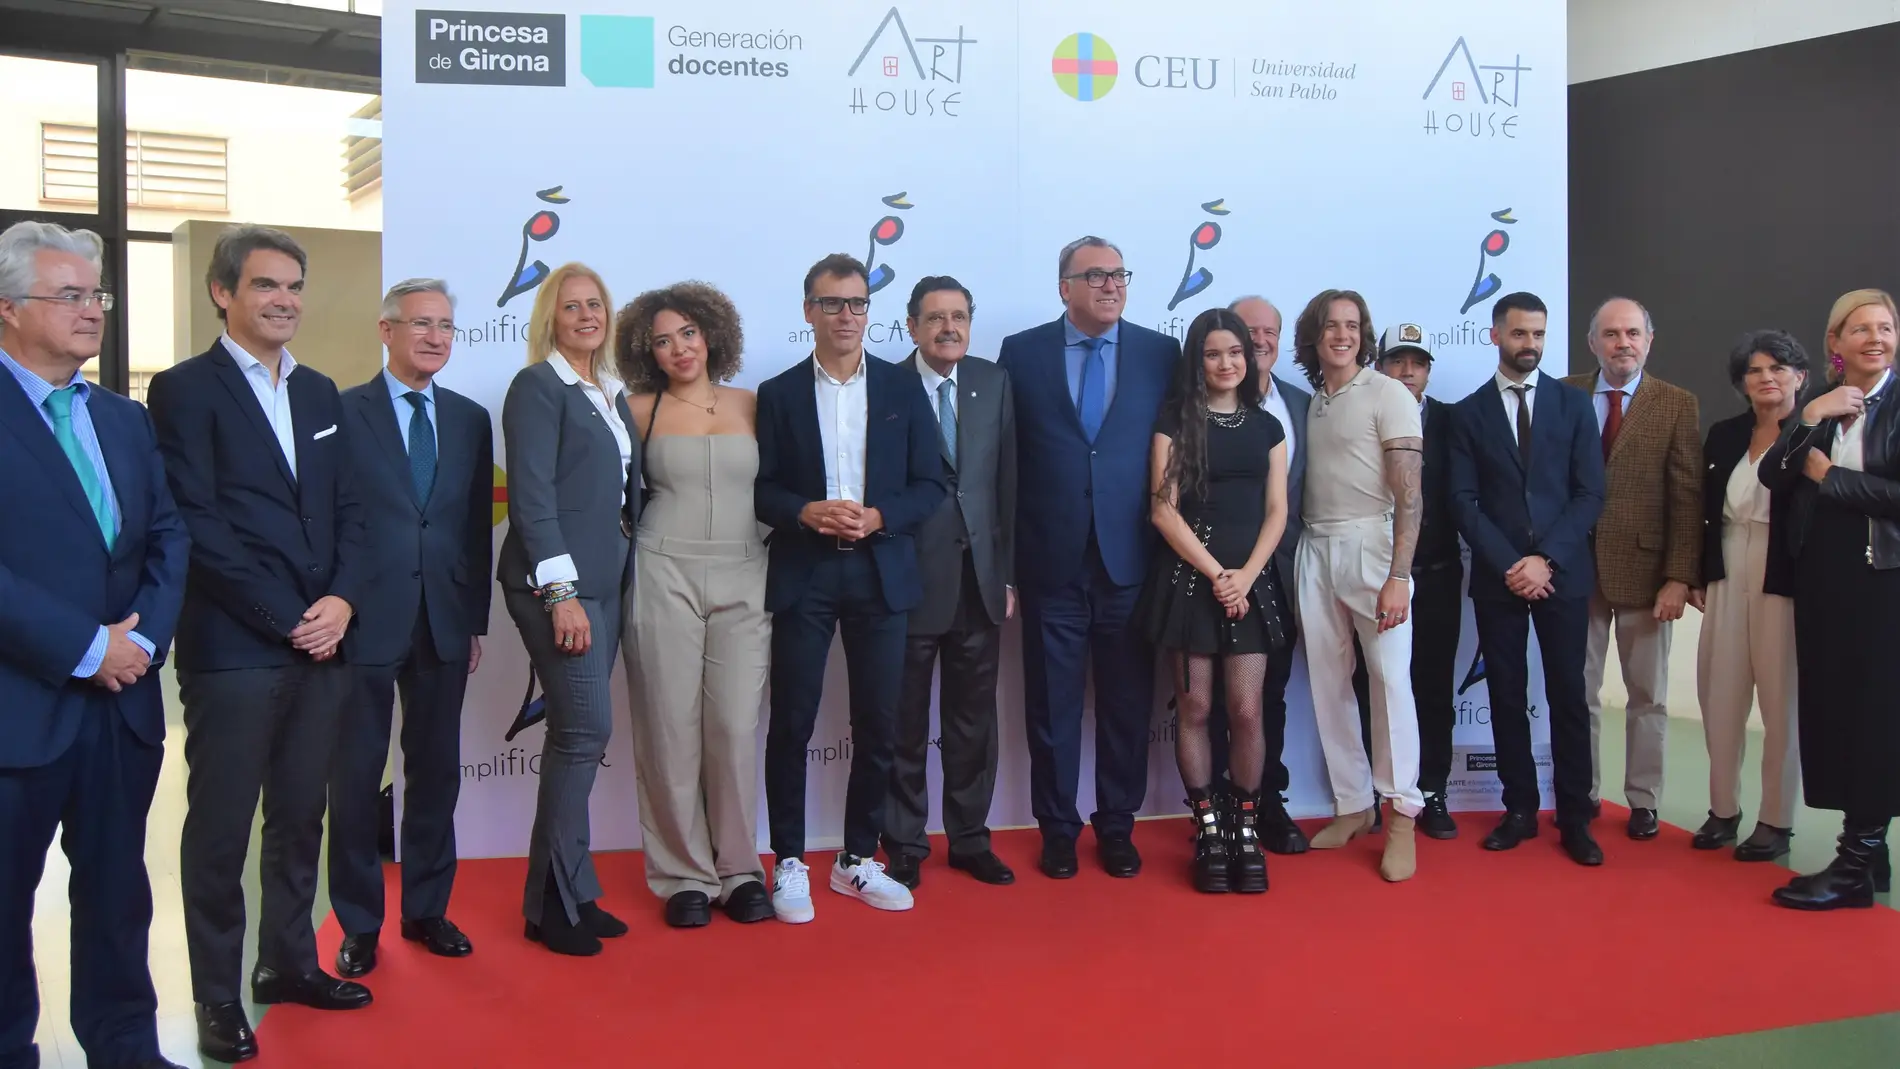 Proyecto AmplificARTE de la Fundación Princesa de Girona con artistas nominados a los Grammy Latinos